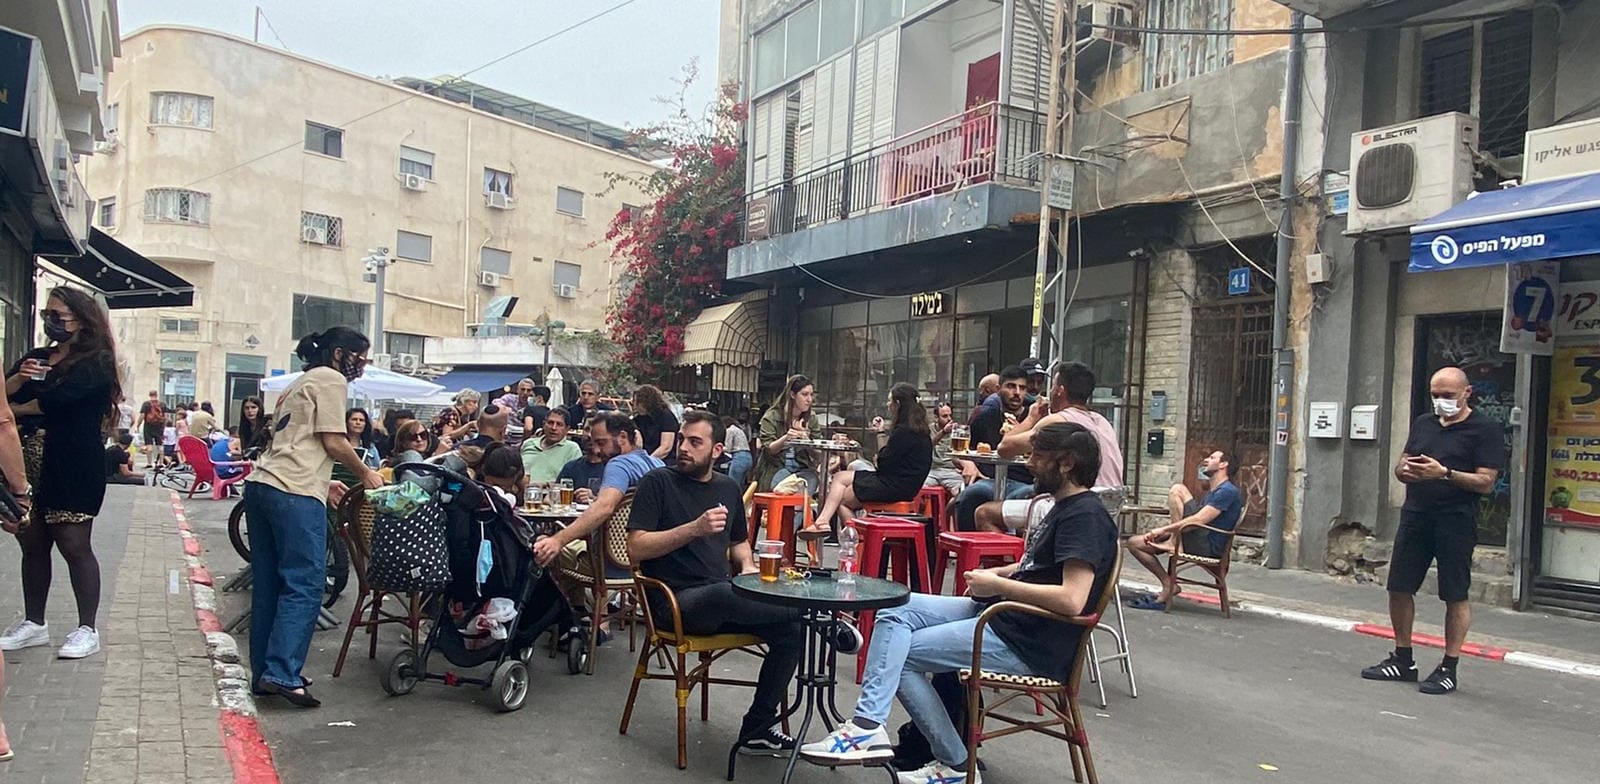 שוק לוינסקי בתל אביב מלא מבקרים / צילום: מיכל רז חיימוביץ